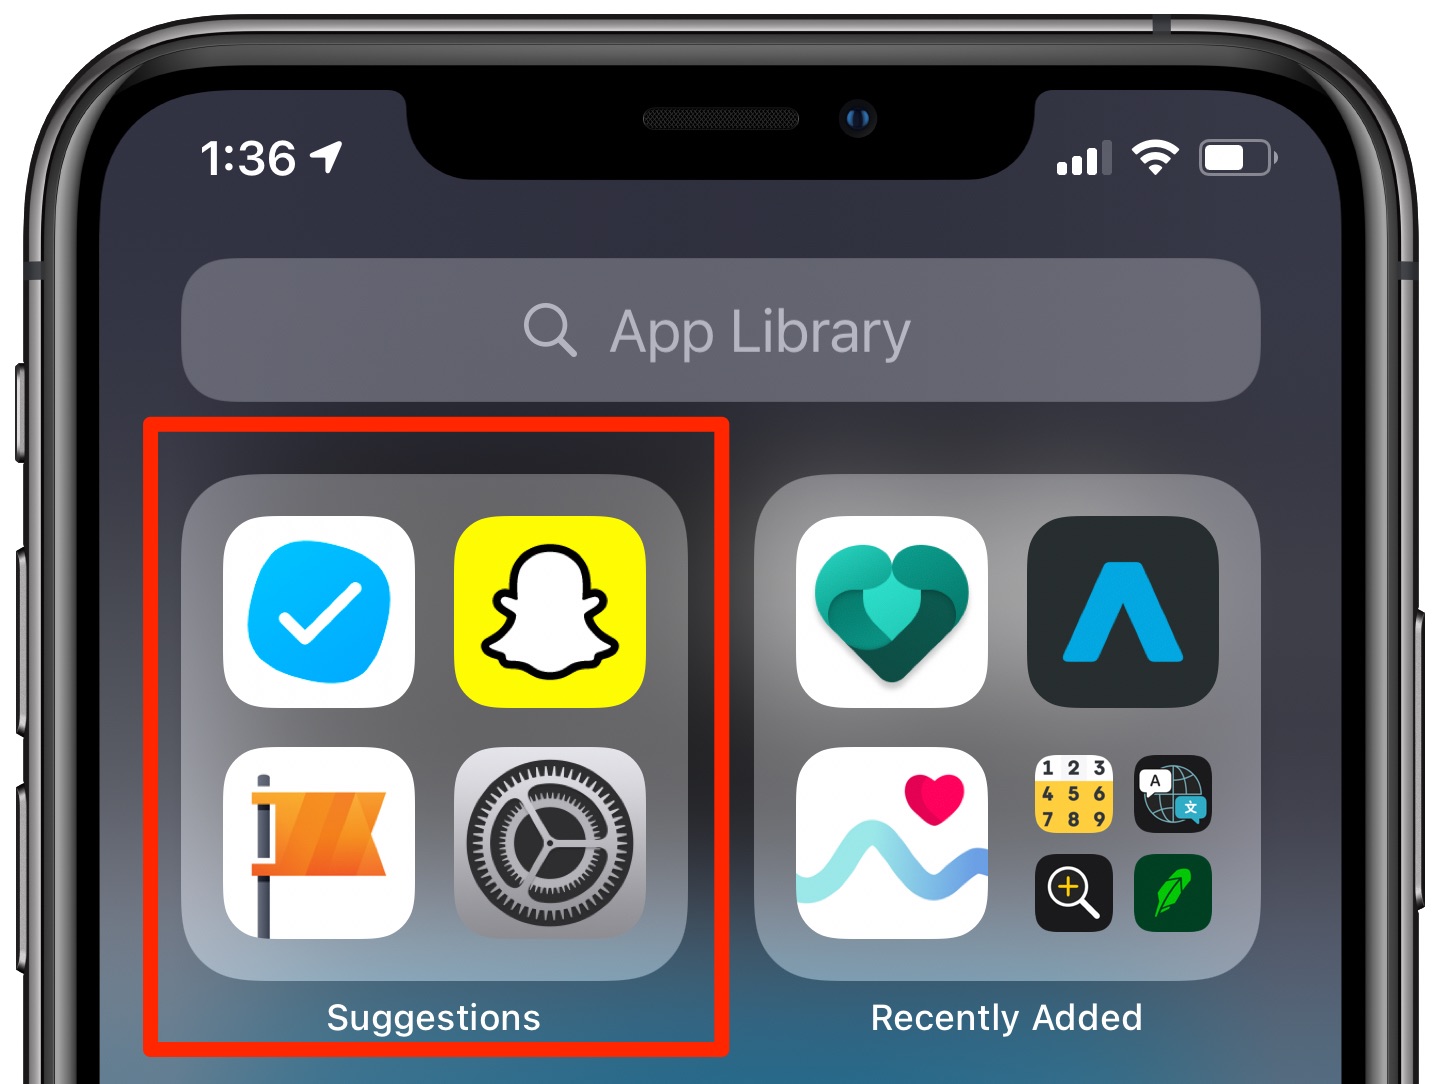 App suggerite da Siri - Libreria app con la cartella Suggerimenti evidenziata